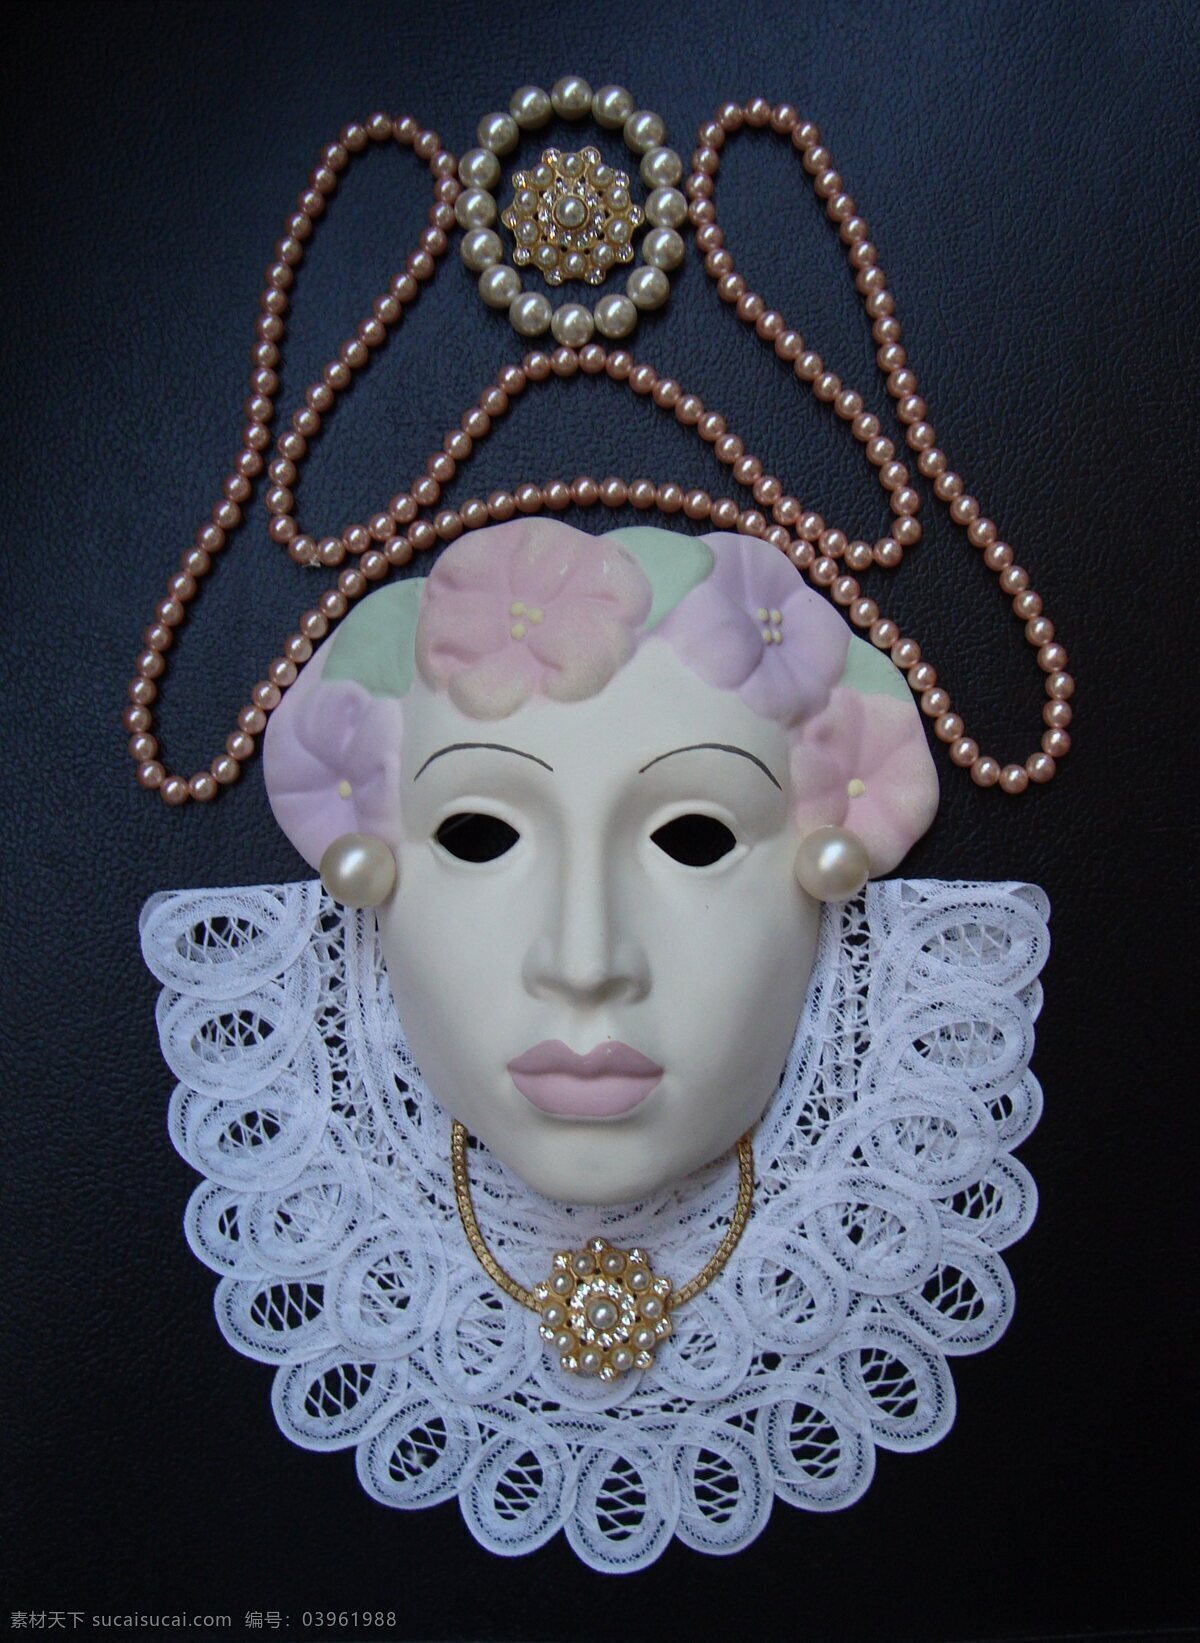 化妆舞会面具 面具 装饰面具 挂墙装饰面具 装饰品 纸扇 珍珠首饰 珍珠项莲首饰 艺术品 文化艺术